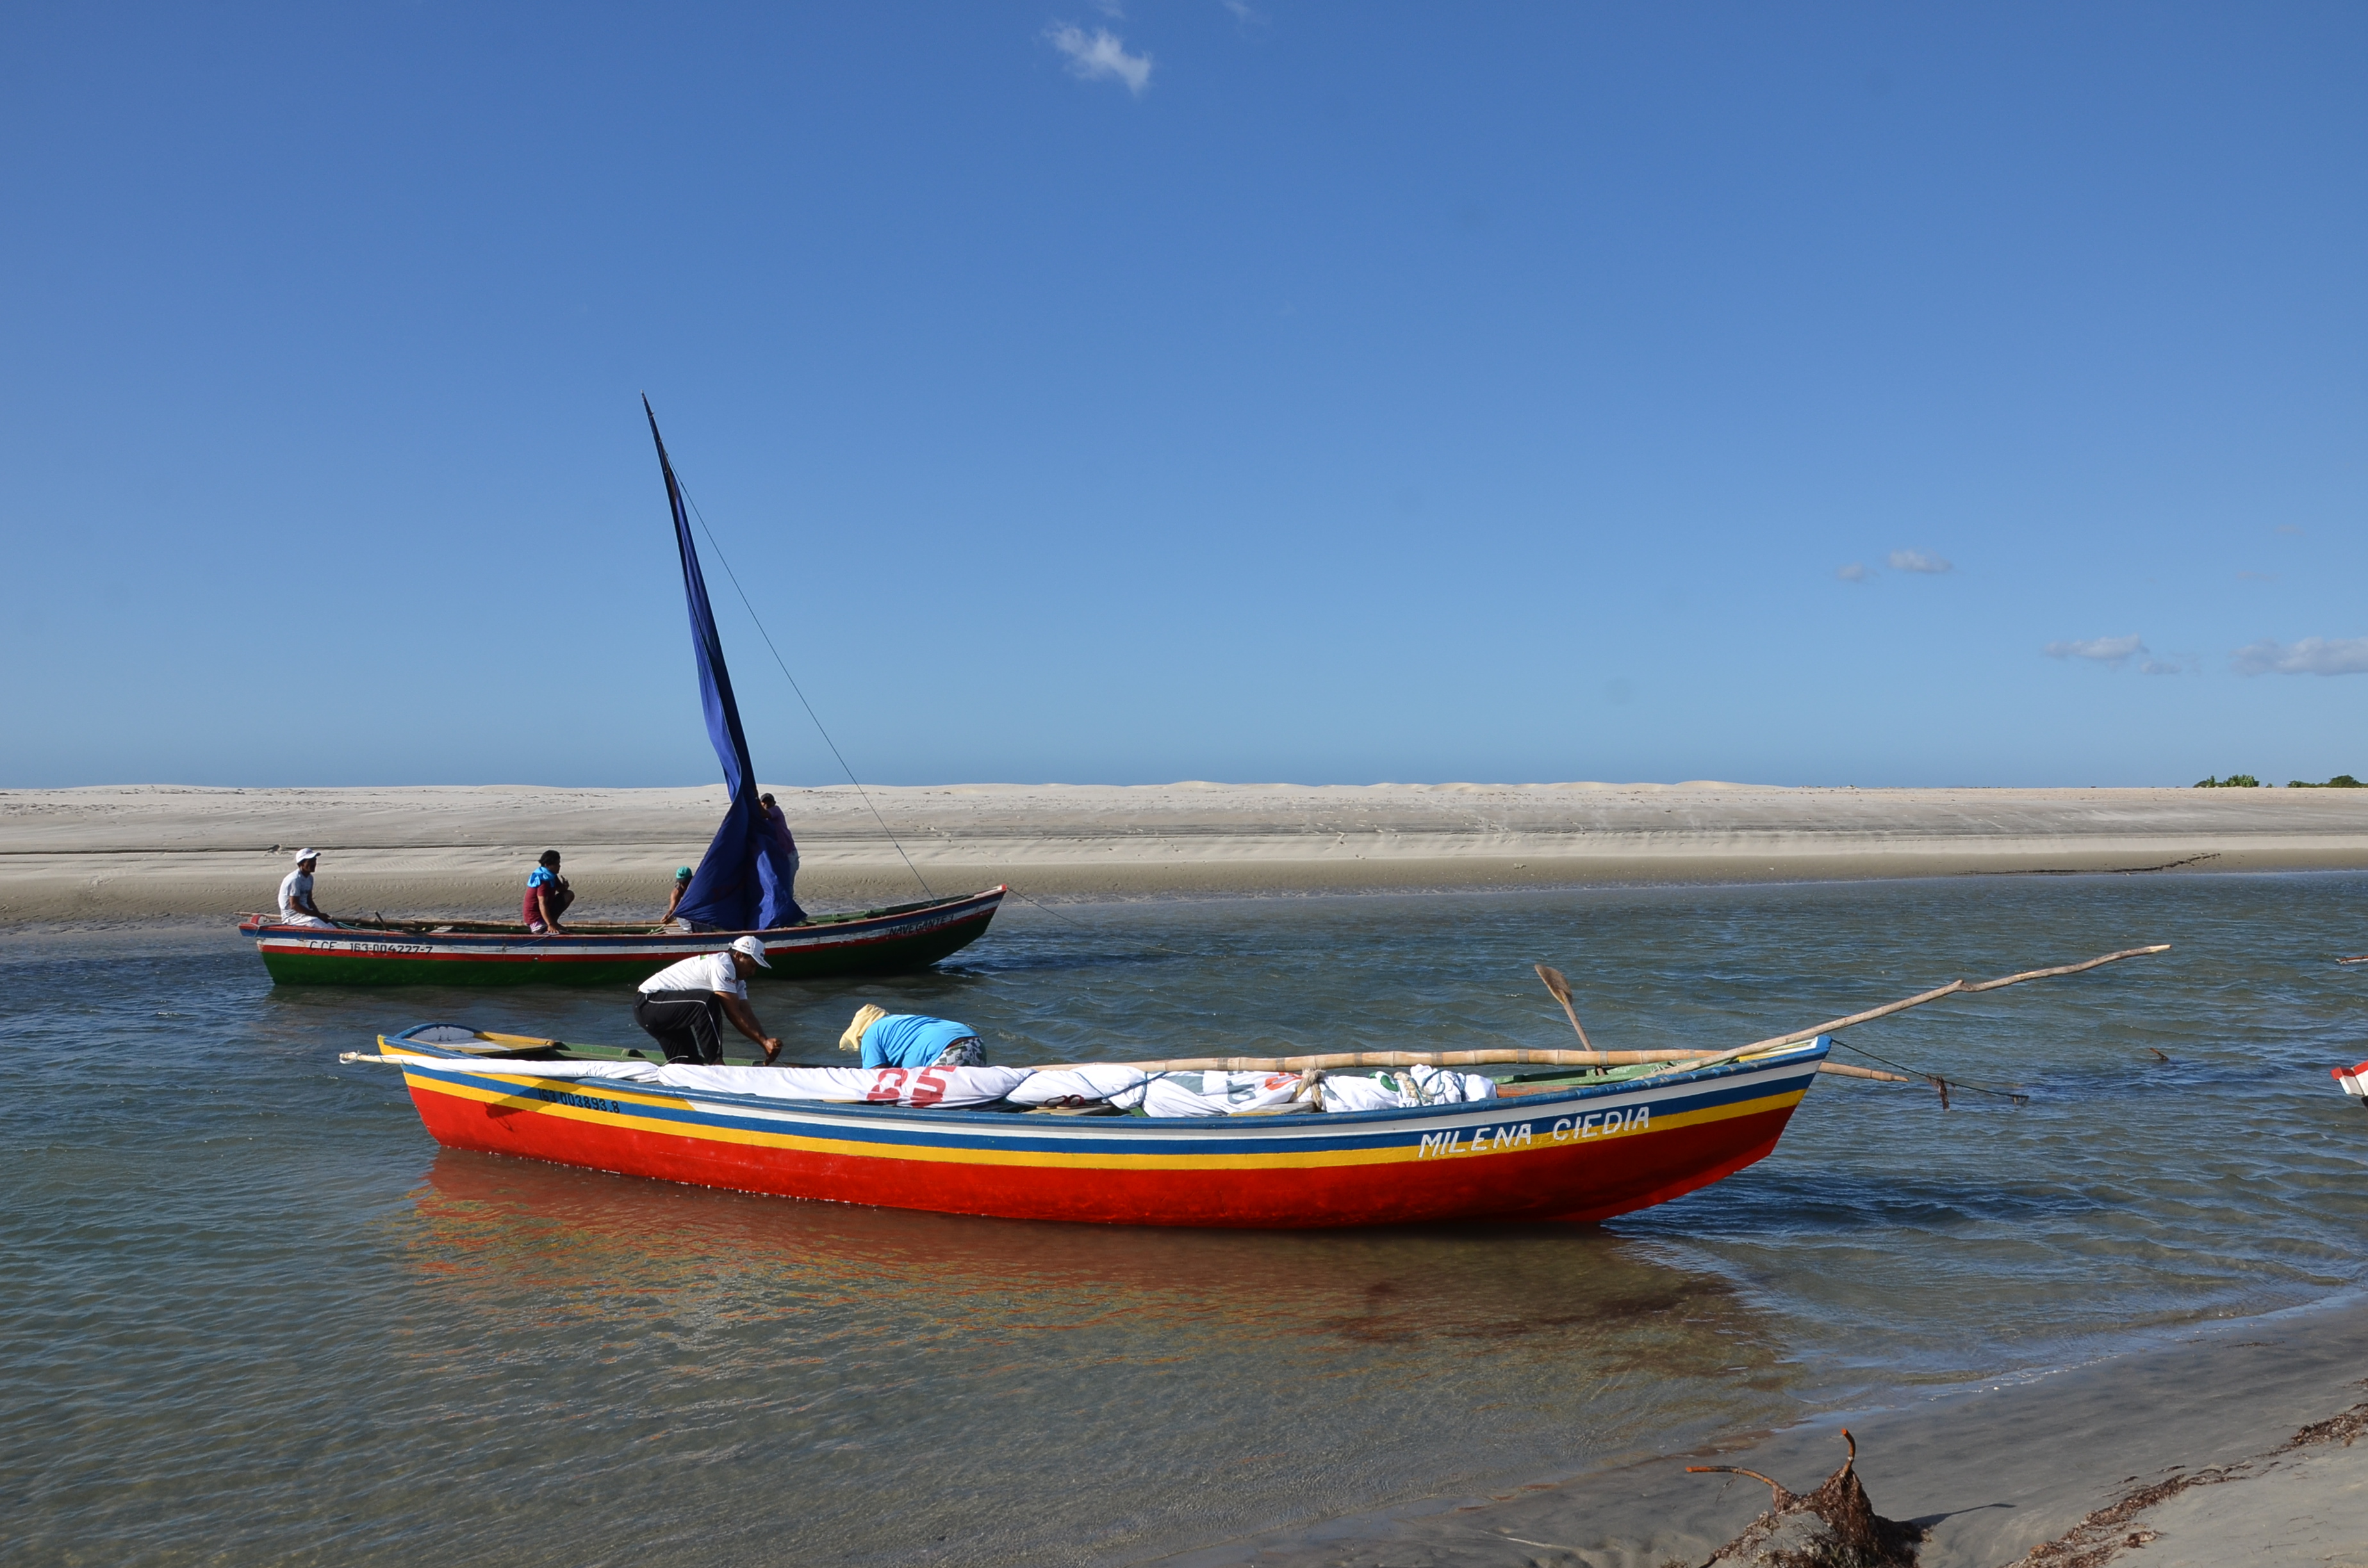 Comunidade de pescadores de Tatajuba, no município de Camocim (CE). Um dos que está localizado próximo da área a ser explorada.